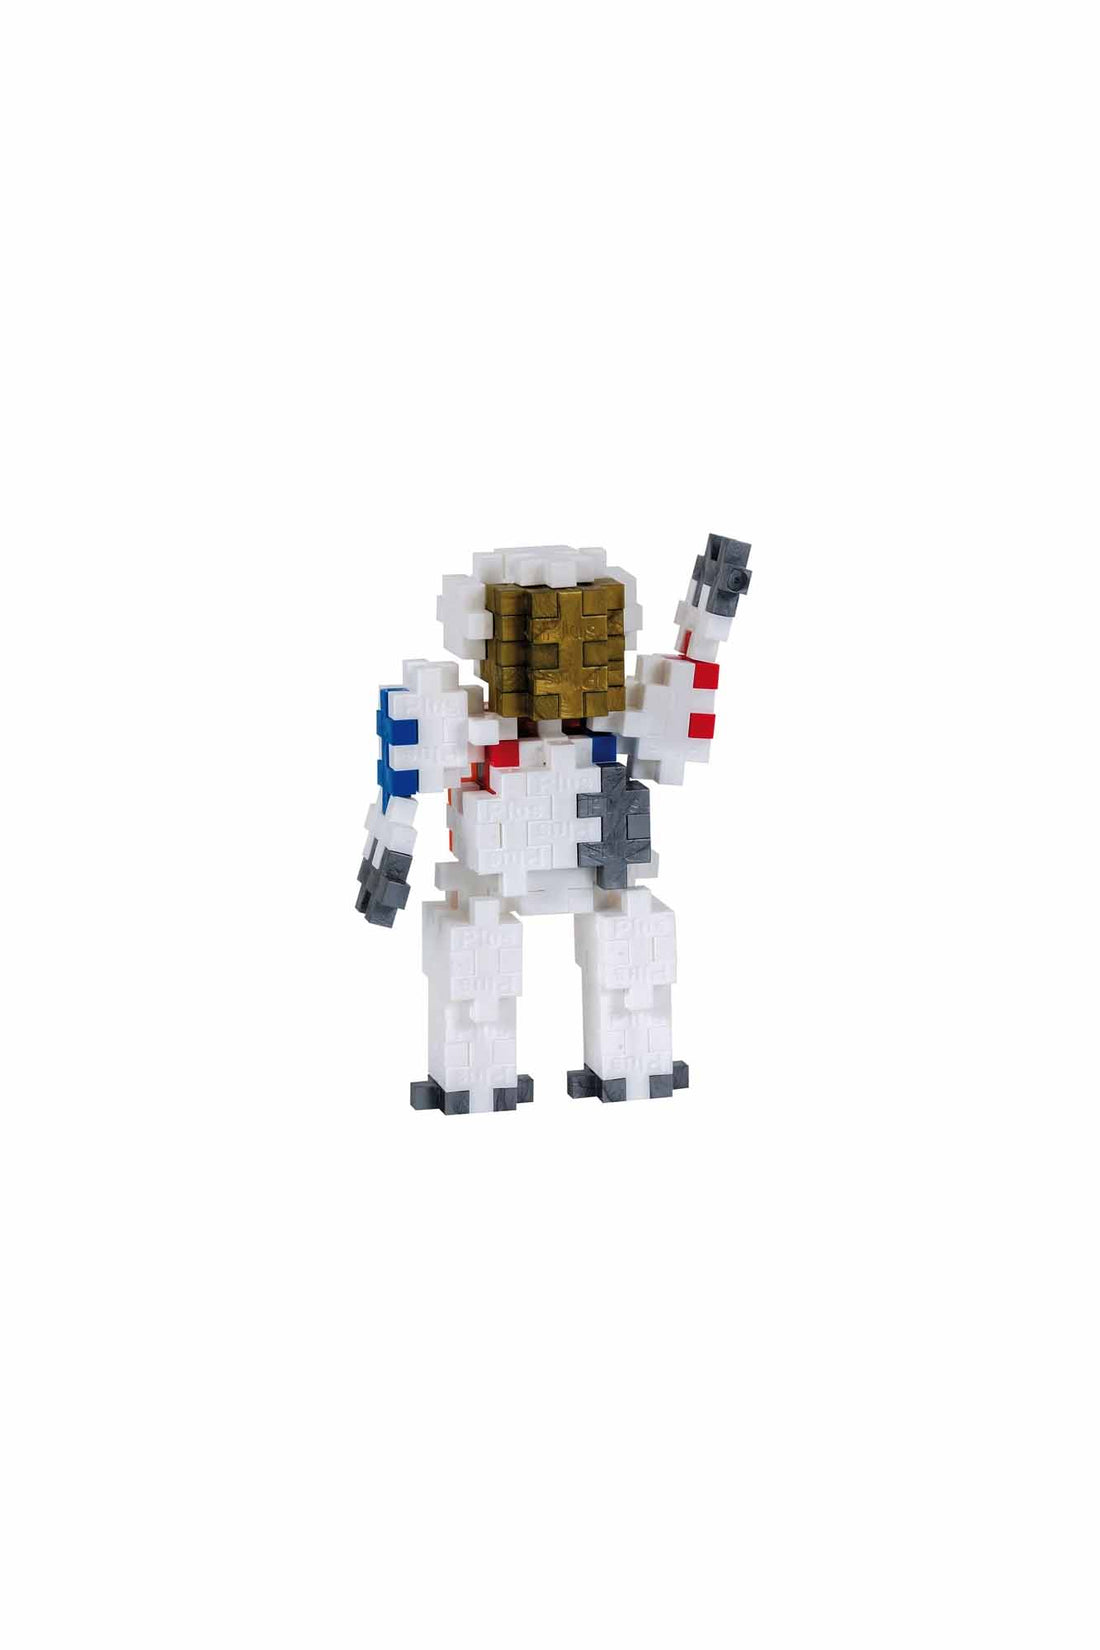 PLUS-PLUS Astronaut - 100 pieces Tube